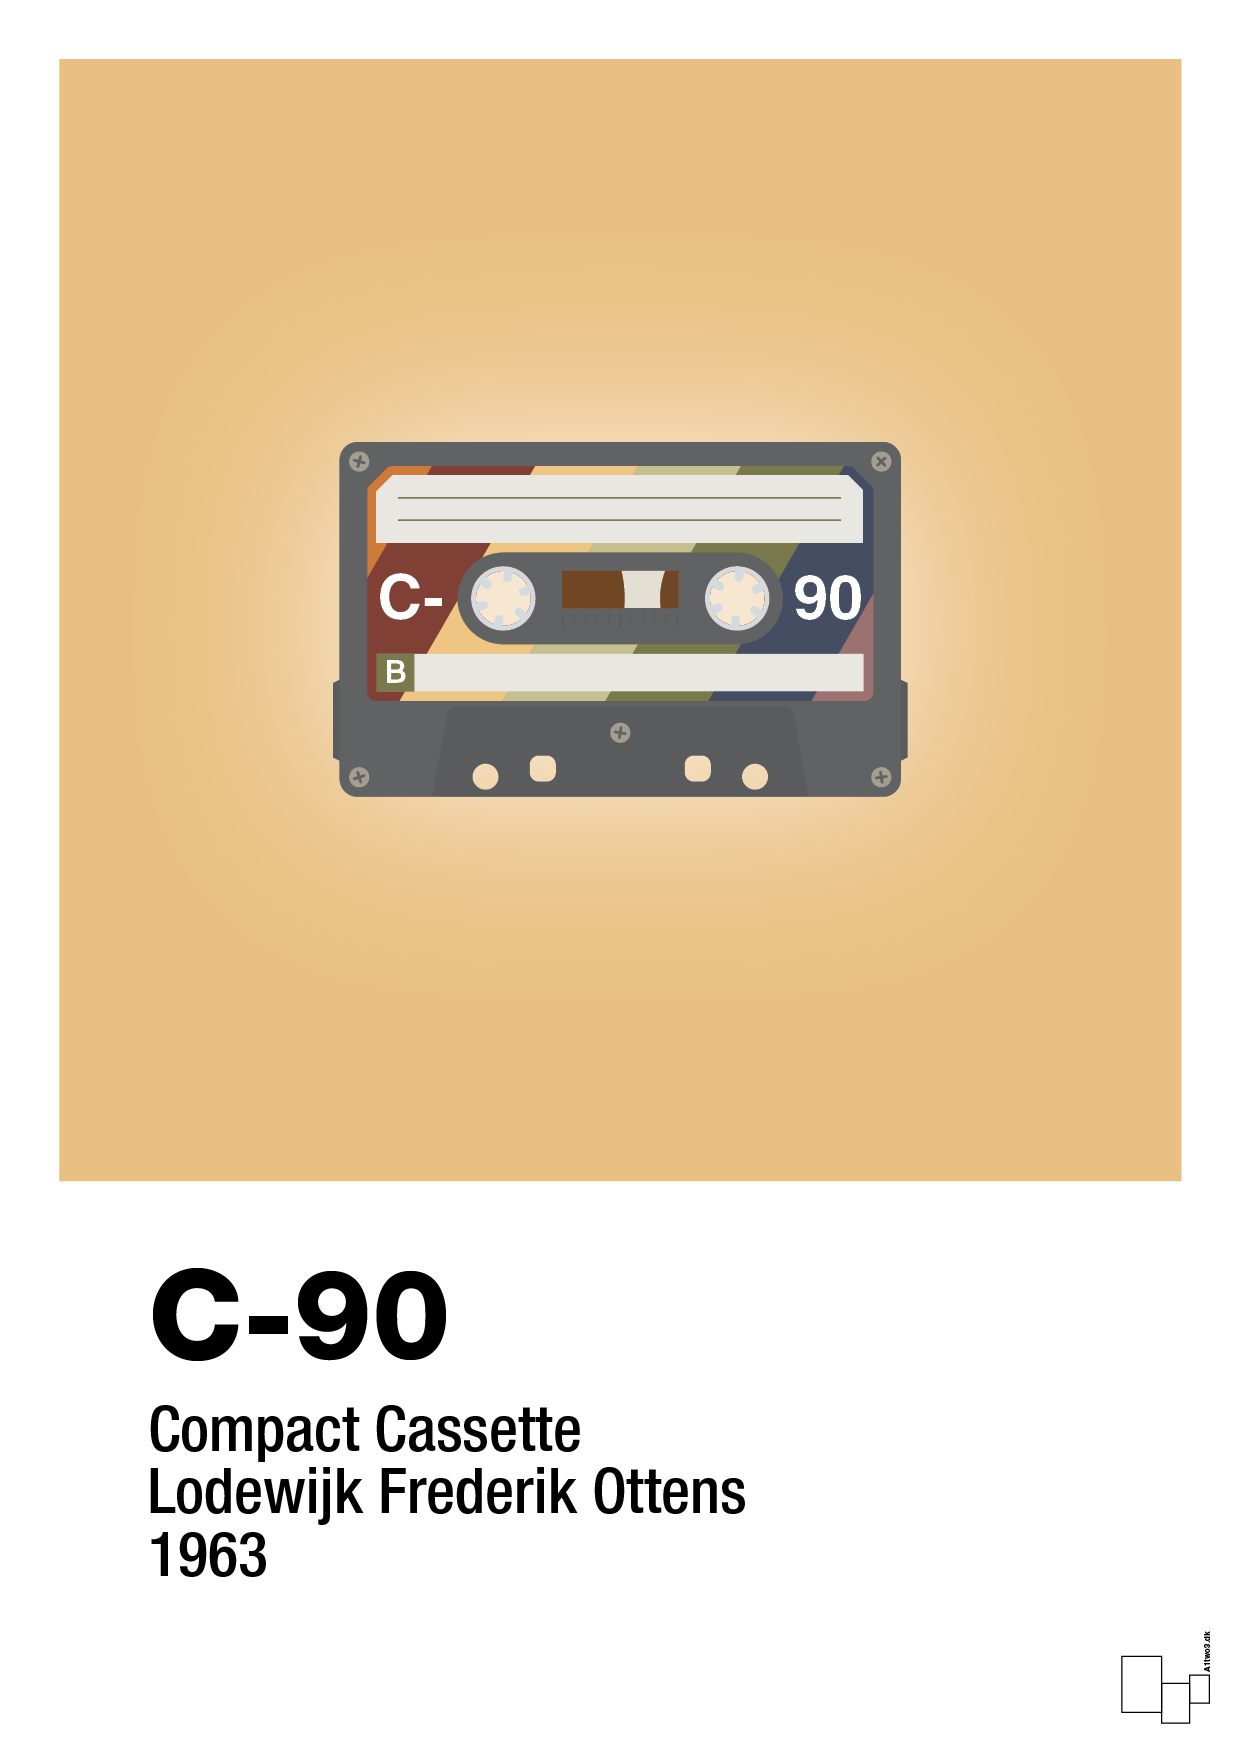 kassettebånd c-90 - Plakat med Grafik i Charismatic